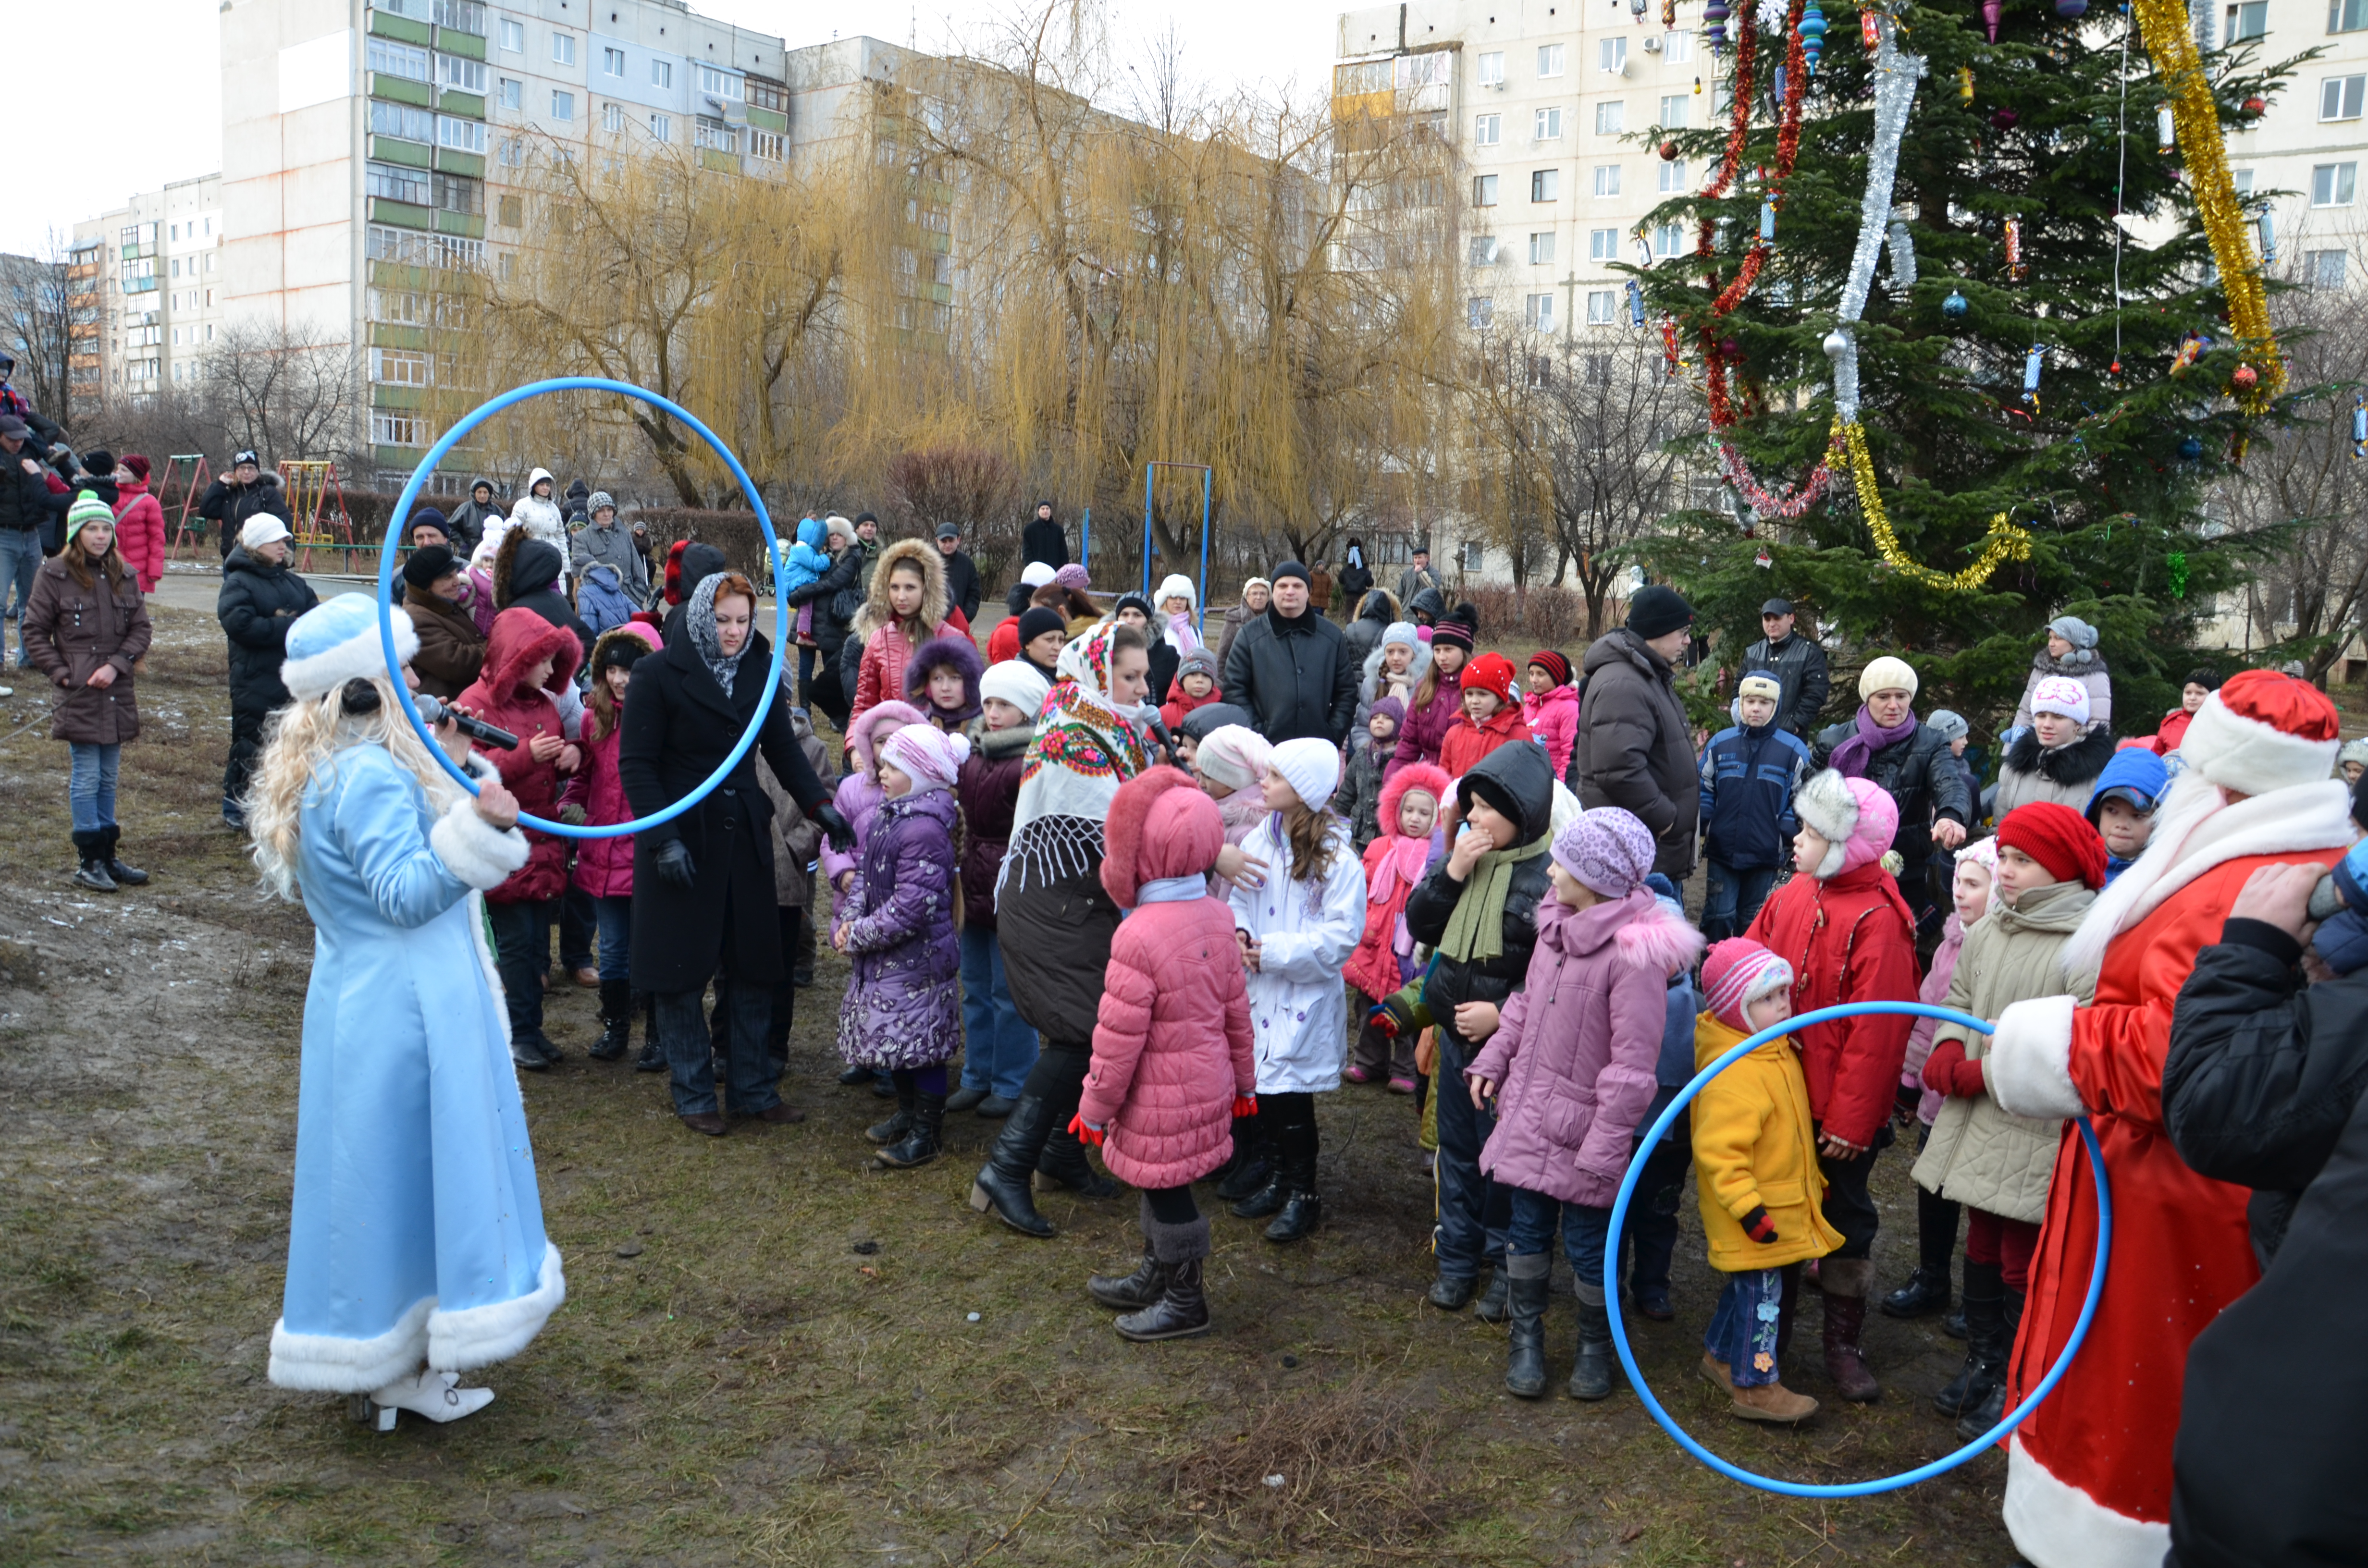 Біля ялинки на бульварі Героїв Сталінграду на дітей очікував сюрприз